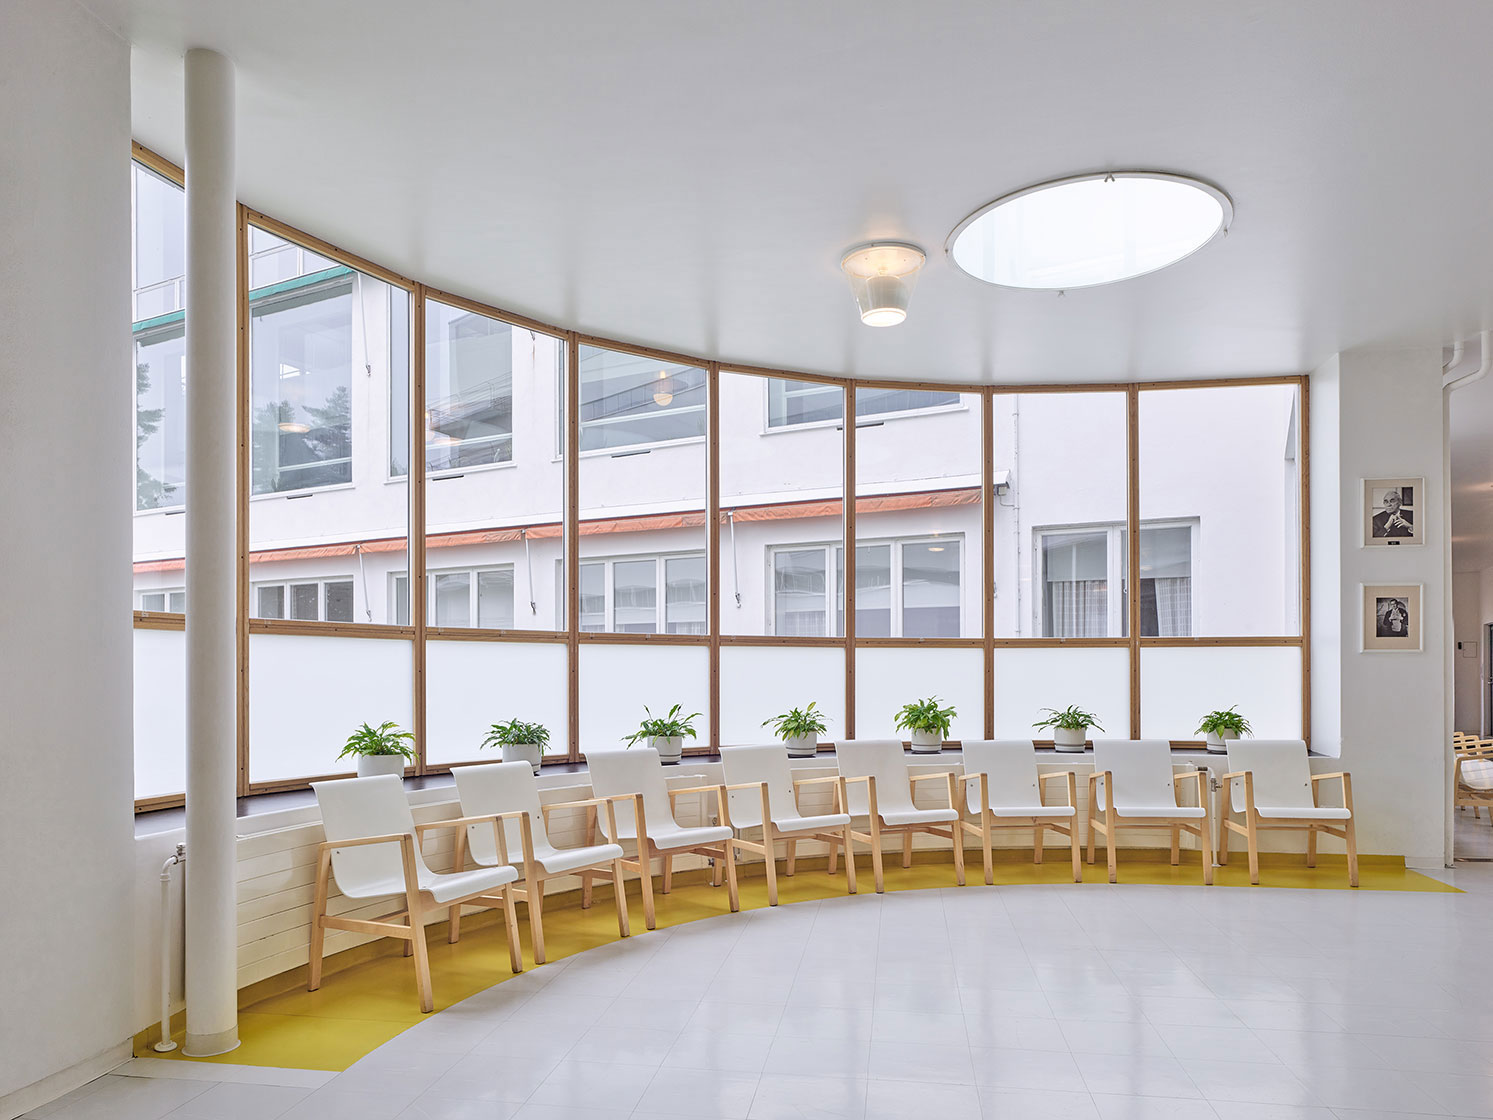 bem-estar: O Paimio Sanatório de Alvar Aalto na Finlândia é um dos primeiros edifícios a adotar regras sanitárias em ambientes para preservação da saúde
